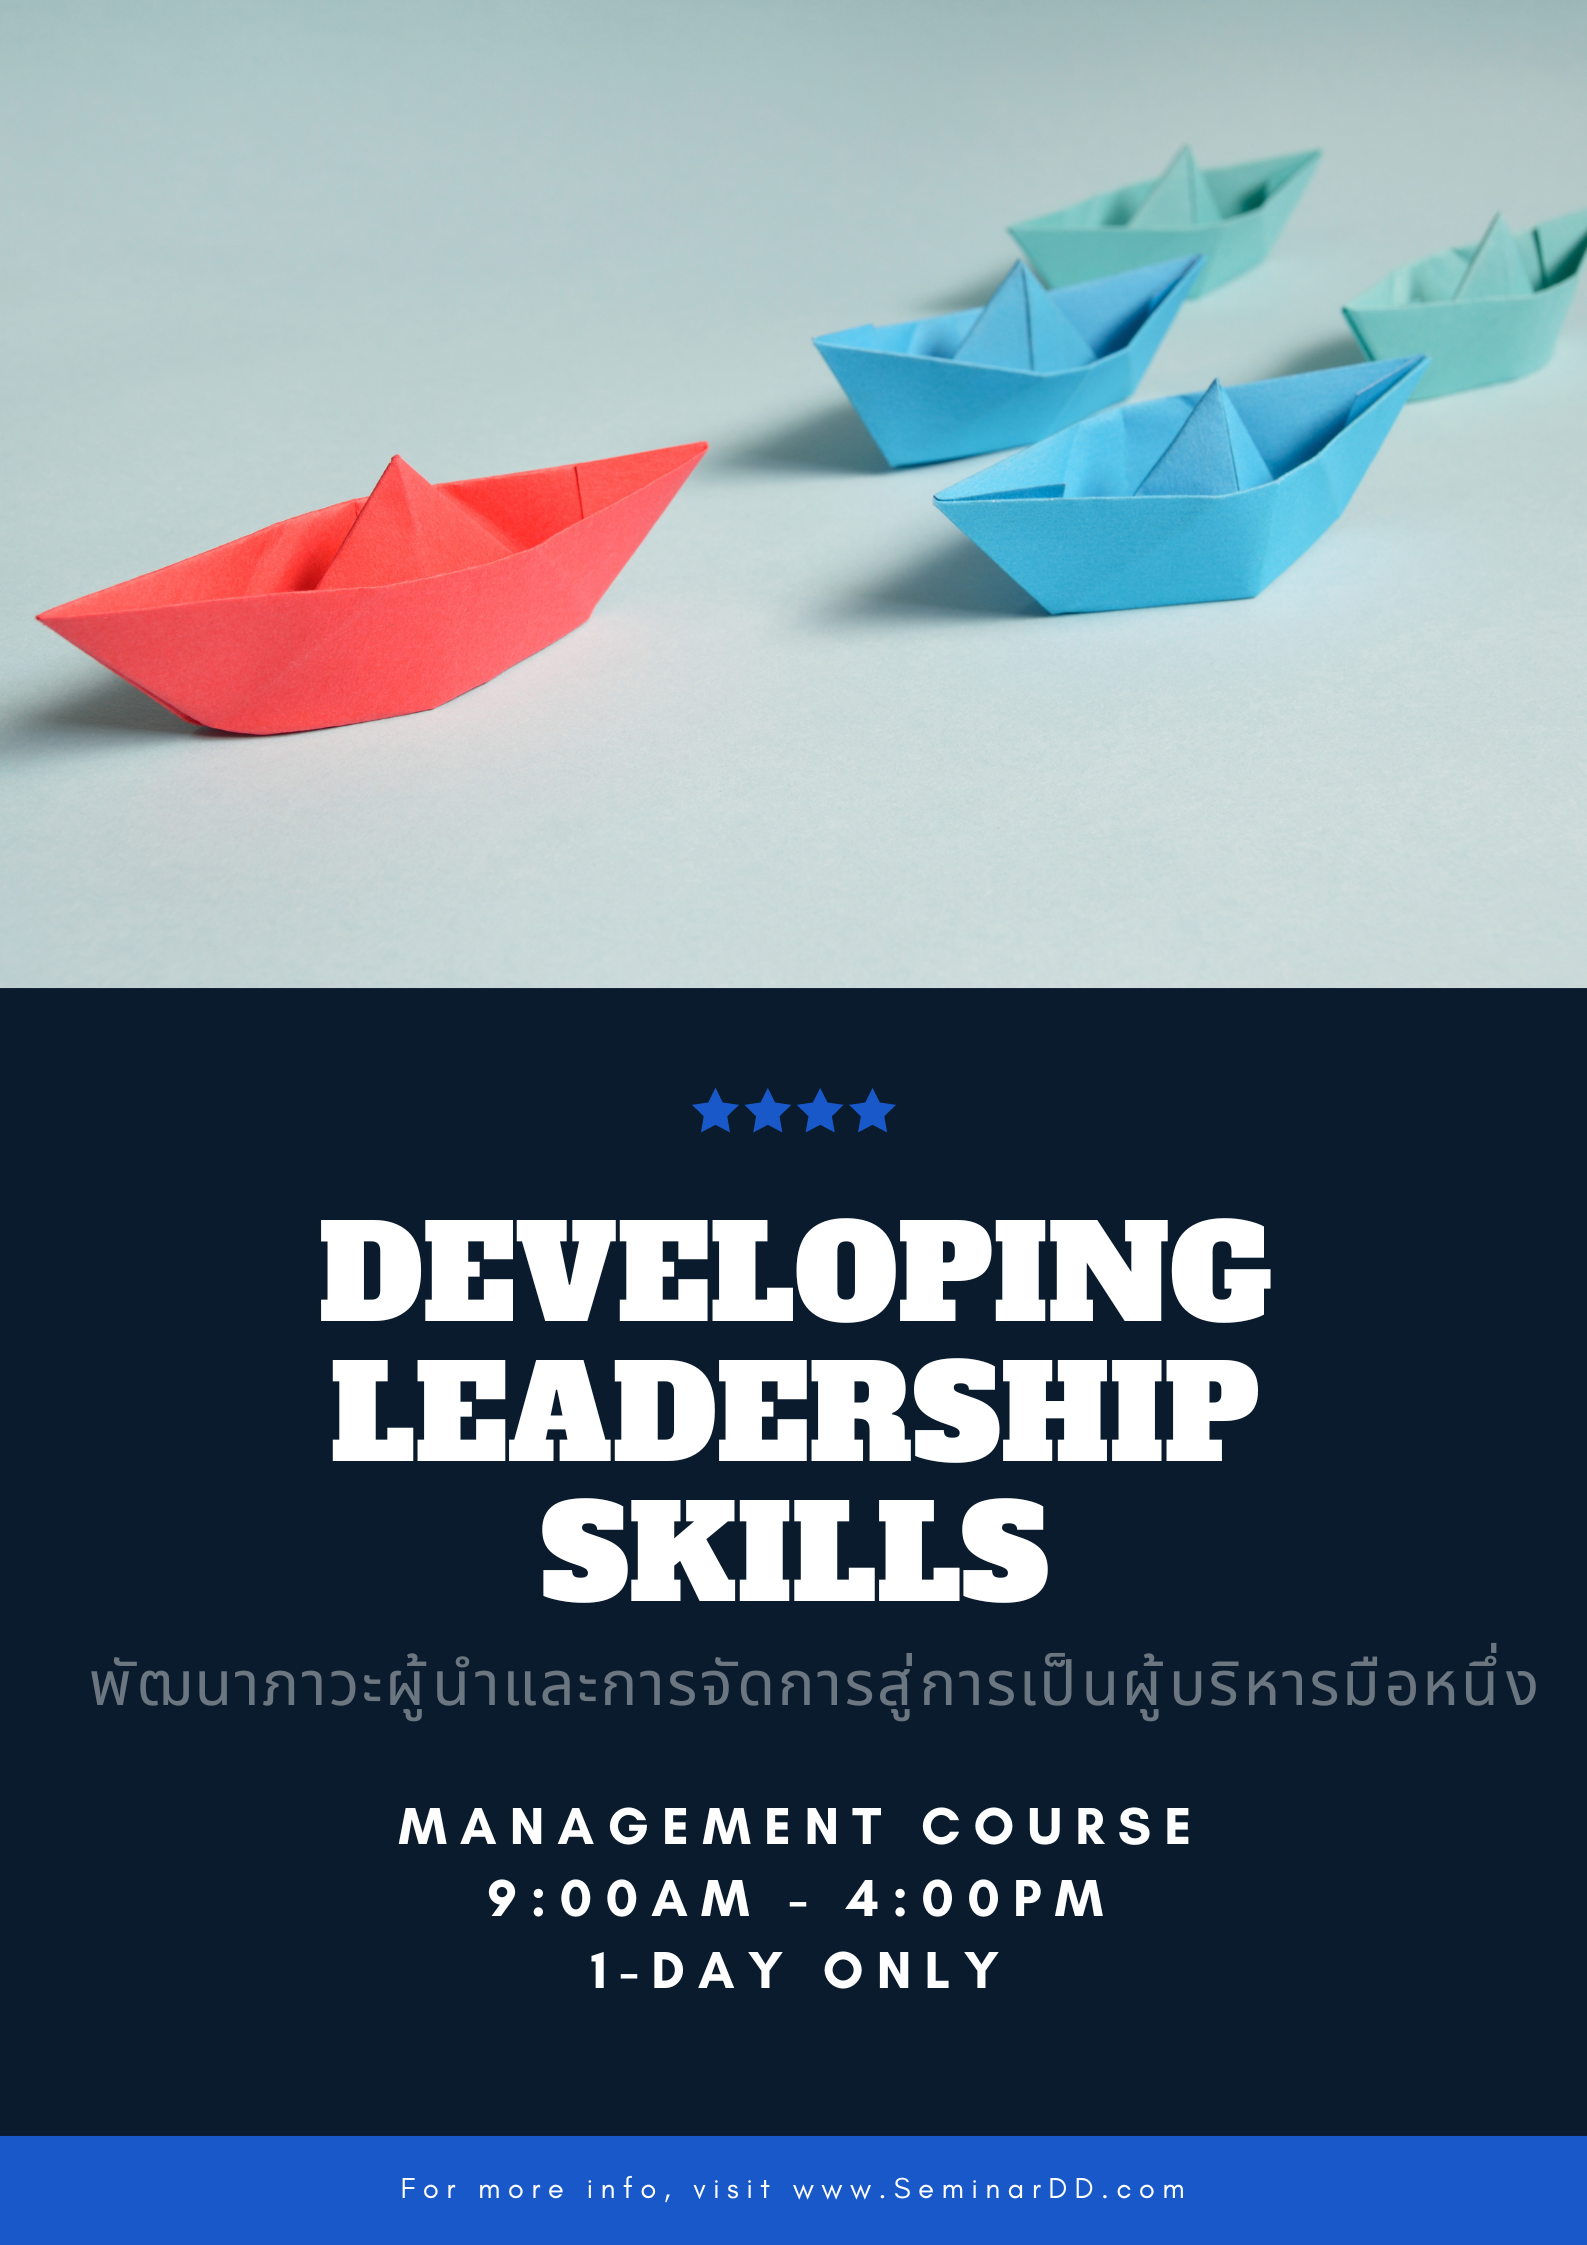 พัฒนาภาวะผู้นำ และทักษะการจัดการสู่การเป็นผู้บริหารมือหนึ่ง ( Developing Leadership Skills )